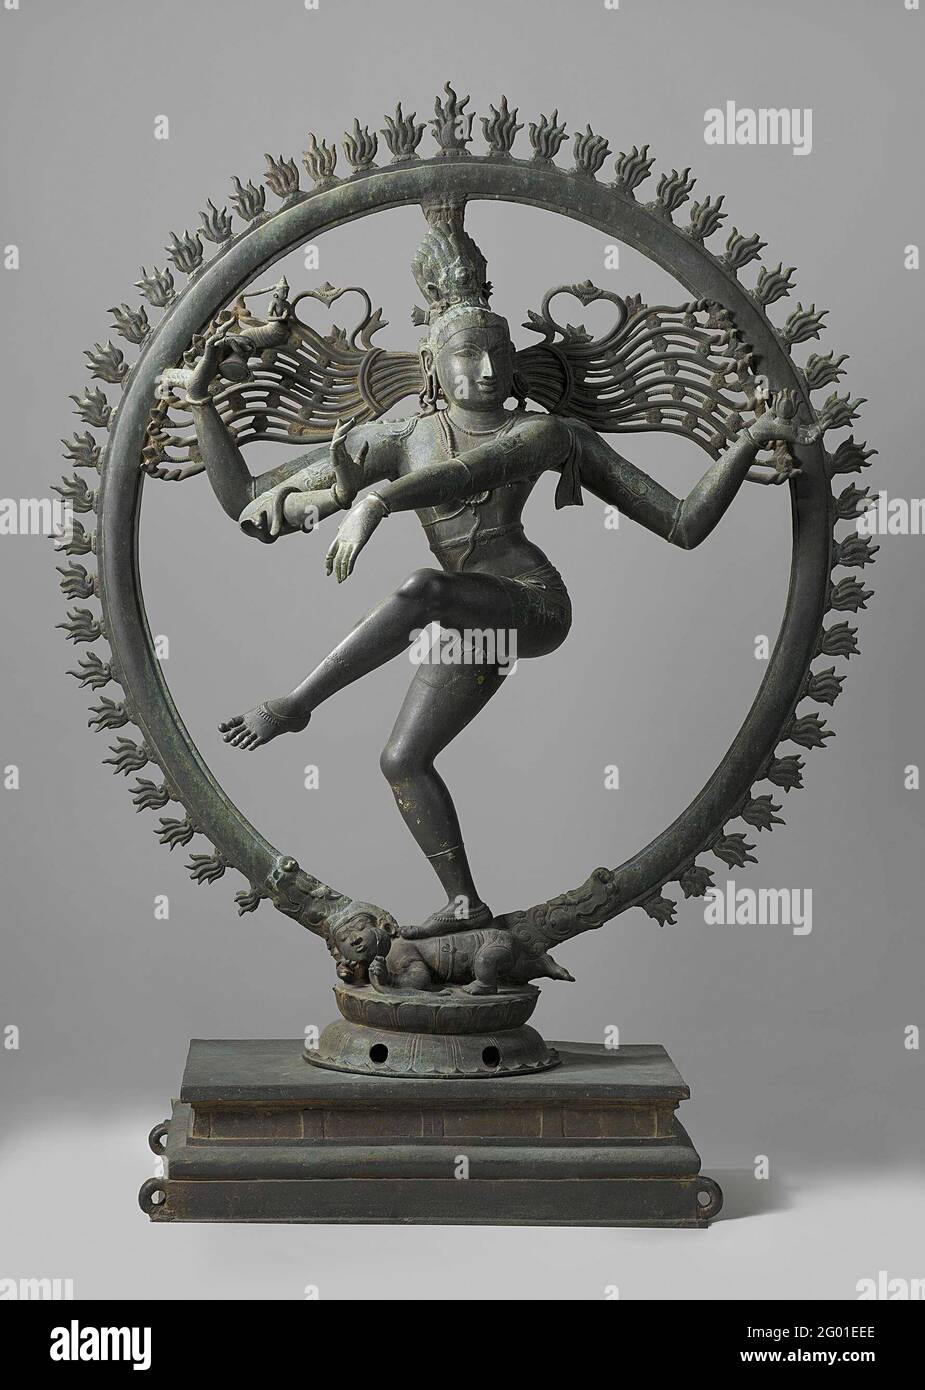 Shiva Nataraja. Shiva, nella sua manifestazione come Nataraja (Re dei ballerini), rappresentato nella posa dell'anandatandava e circondato da un alone di fuoco, è sia il creatore che il distruttore del mondo. Sotto il suo piede c'è un nano, che simboleggia l'ignoranza. I bronzei riccamente decorati degli dei indù furono portati in processione nei giorni di festa. I pali di trasporto sono stati inseriti attraverso gli anelli sulla base. Foto Stock